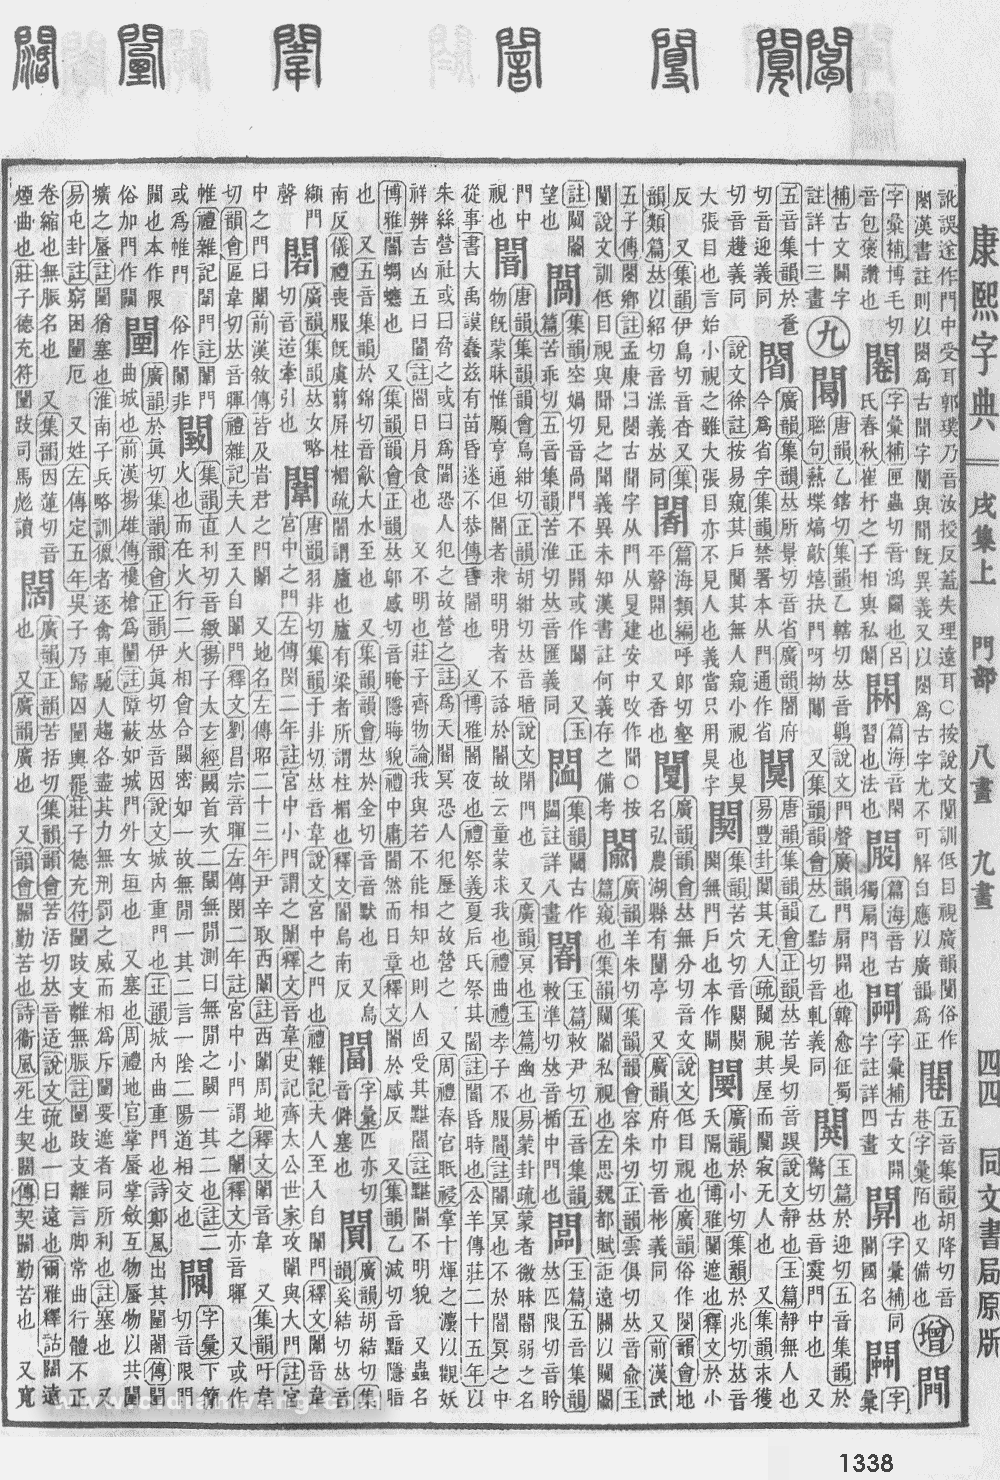 康熙字典掃描版第1338頁